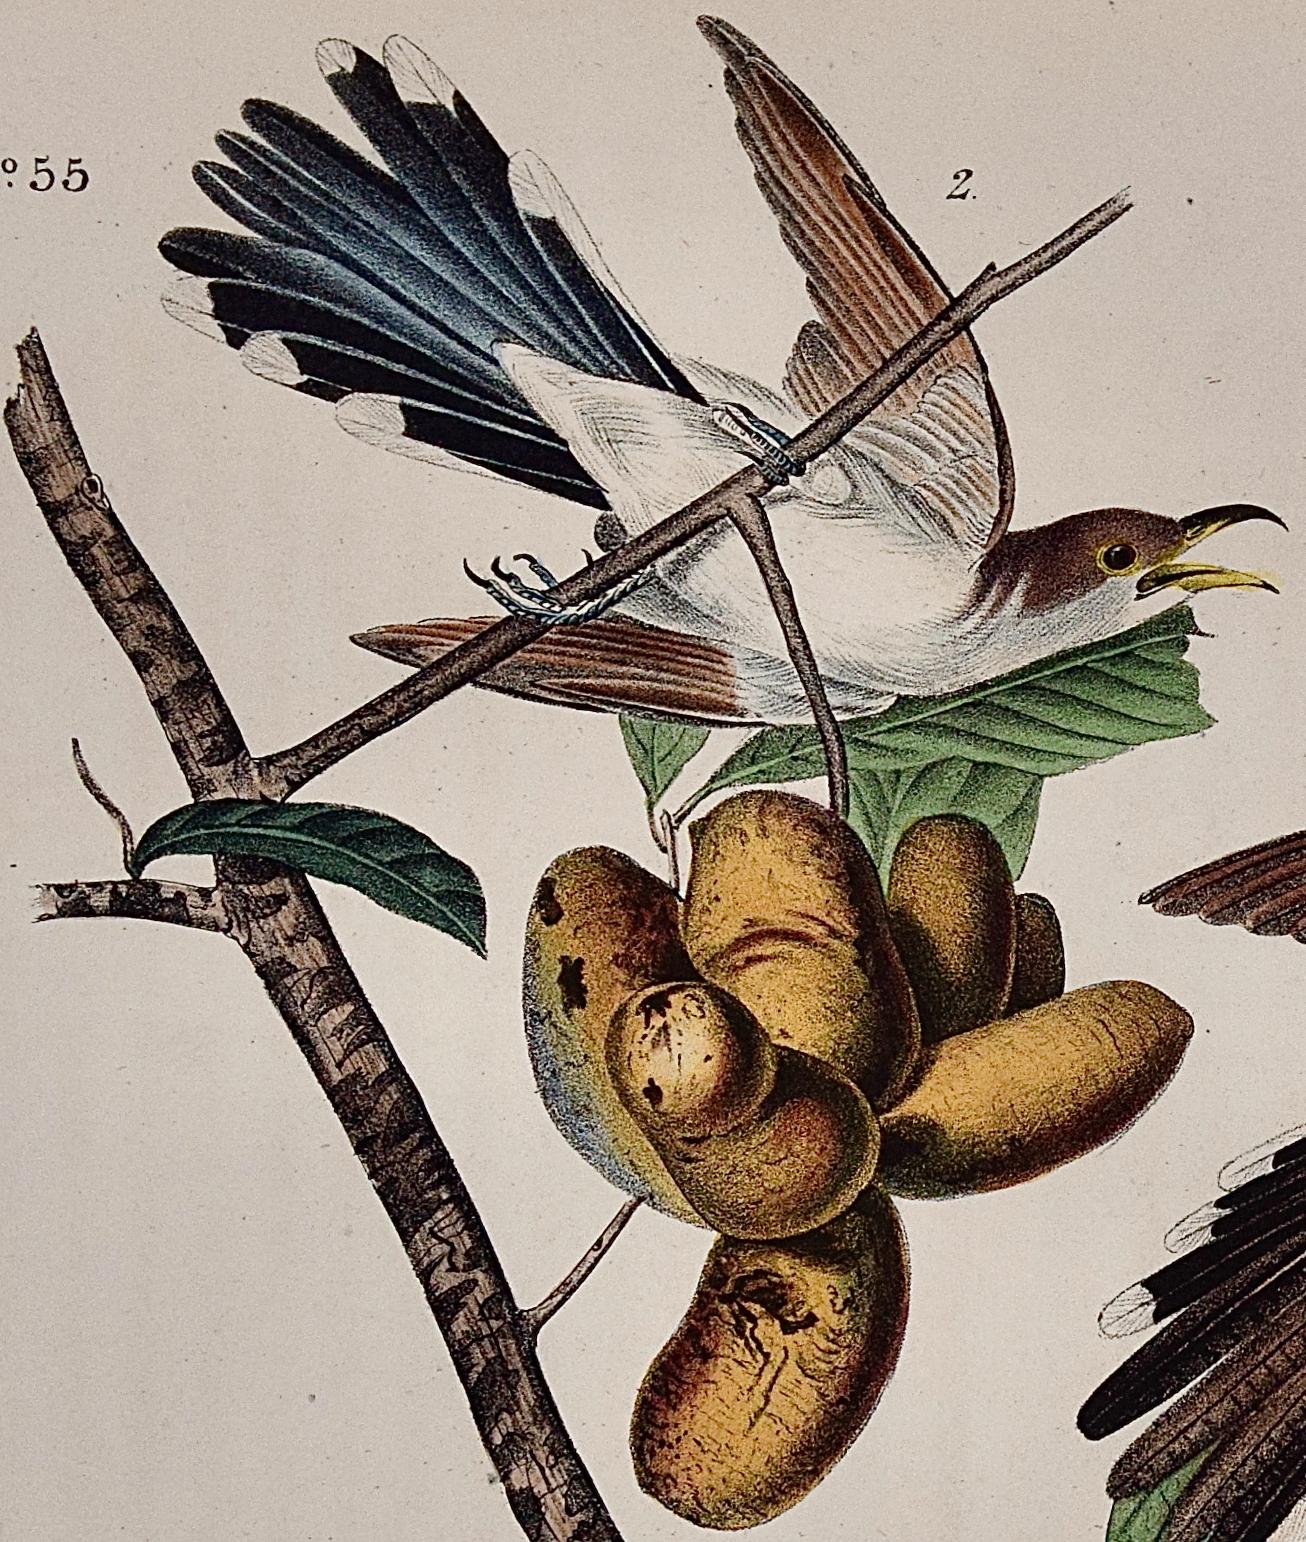 Gelbschnabelkuckuck: Ein Original 1. Ed. Handkolorierte Vogellithographie von Audubon  (Naturalismus), Print, von John James Audubon